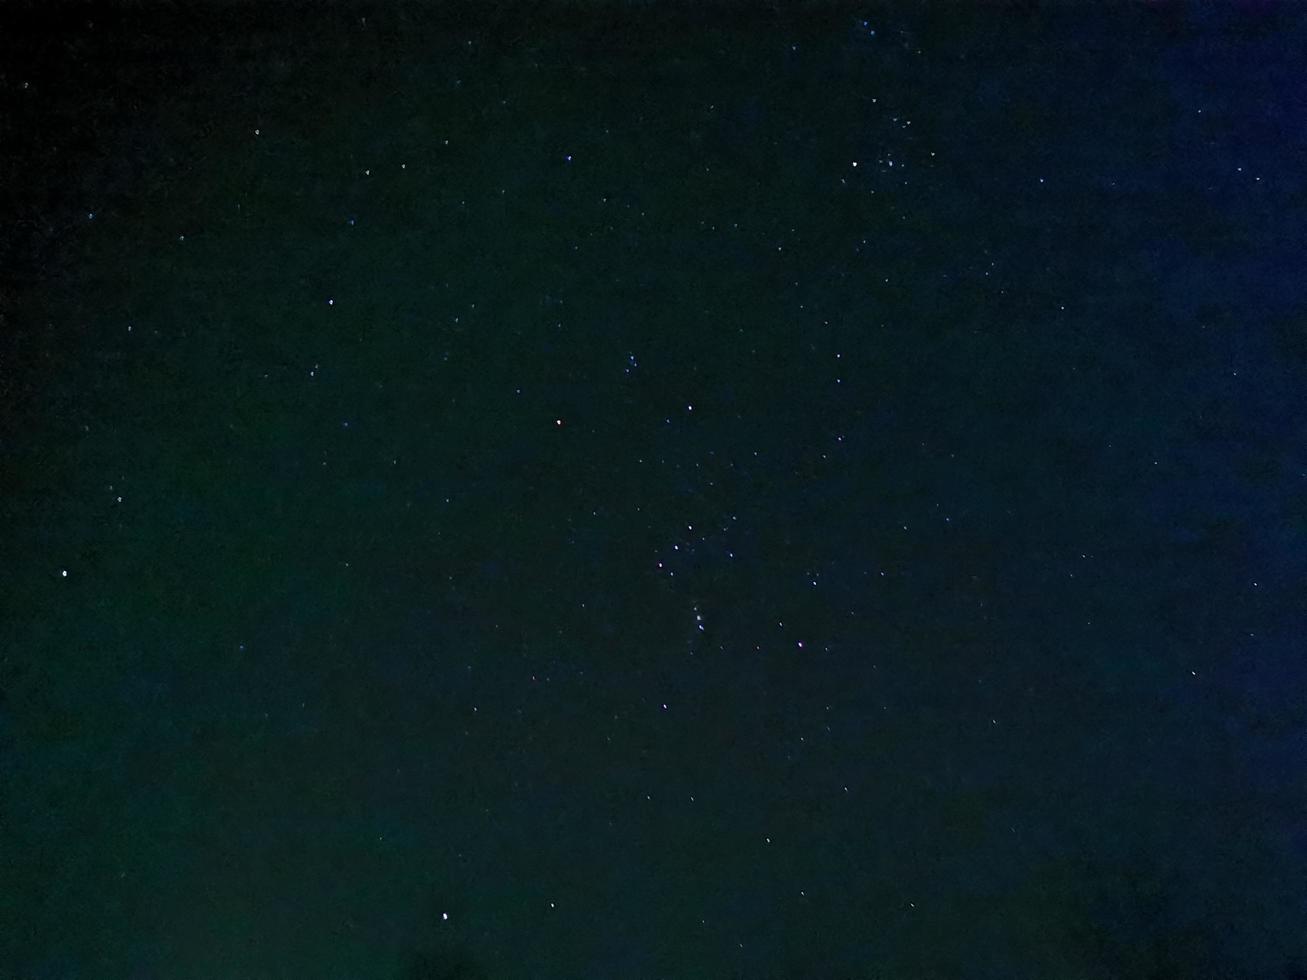 cielo stellato invernale notturno nella costellazione di orione foto